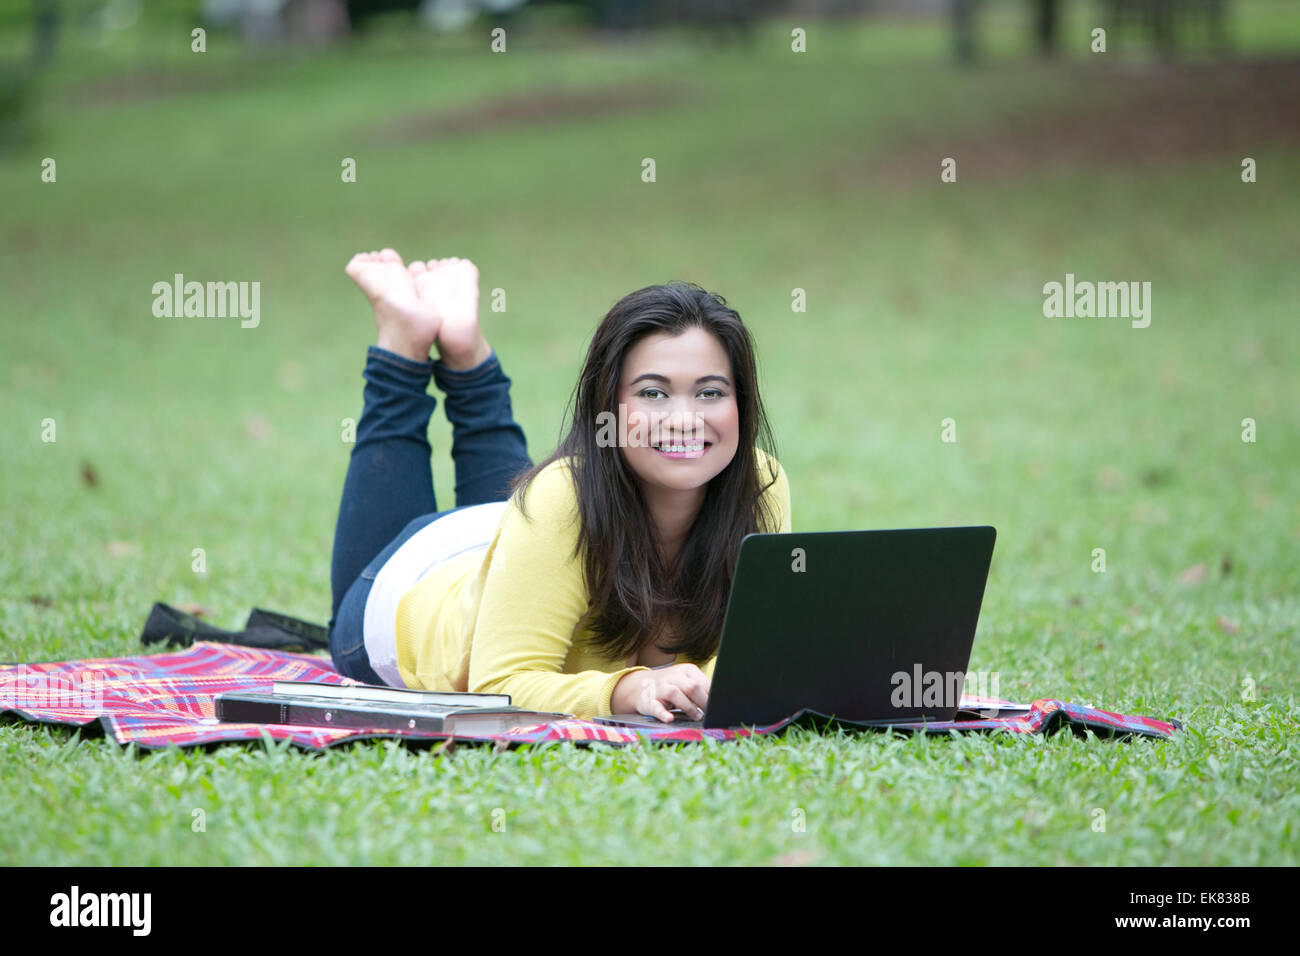 Belle jeune femme d'origine asiatique ou de l'université college student lying on stomach avec des livres, des dossiers et un ordinateur portable dans un parc. Banque D'Images